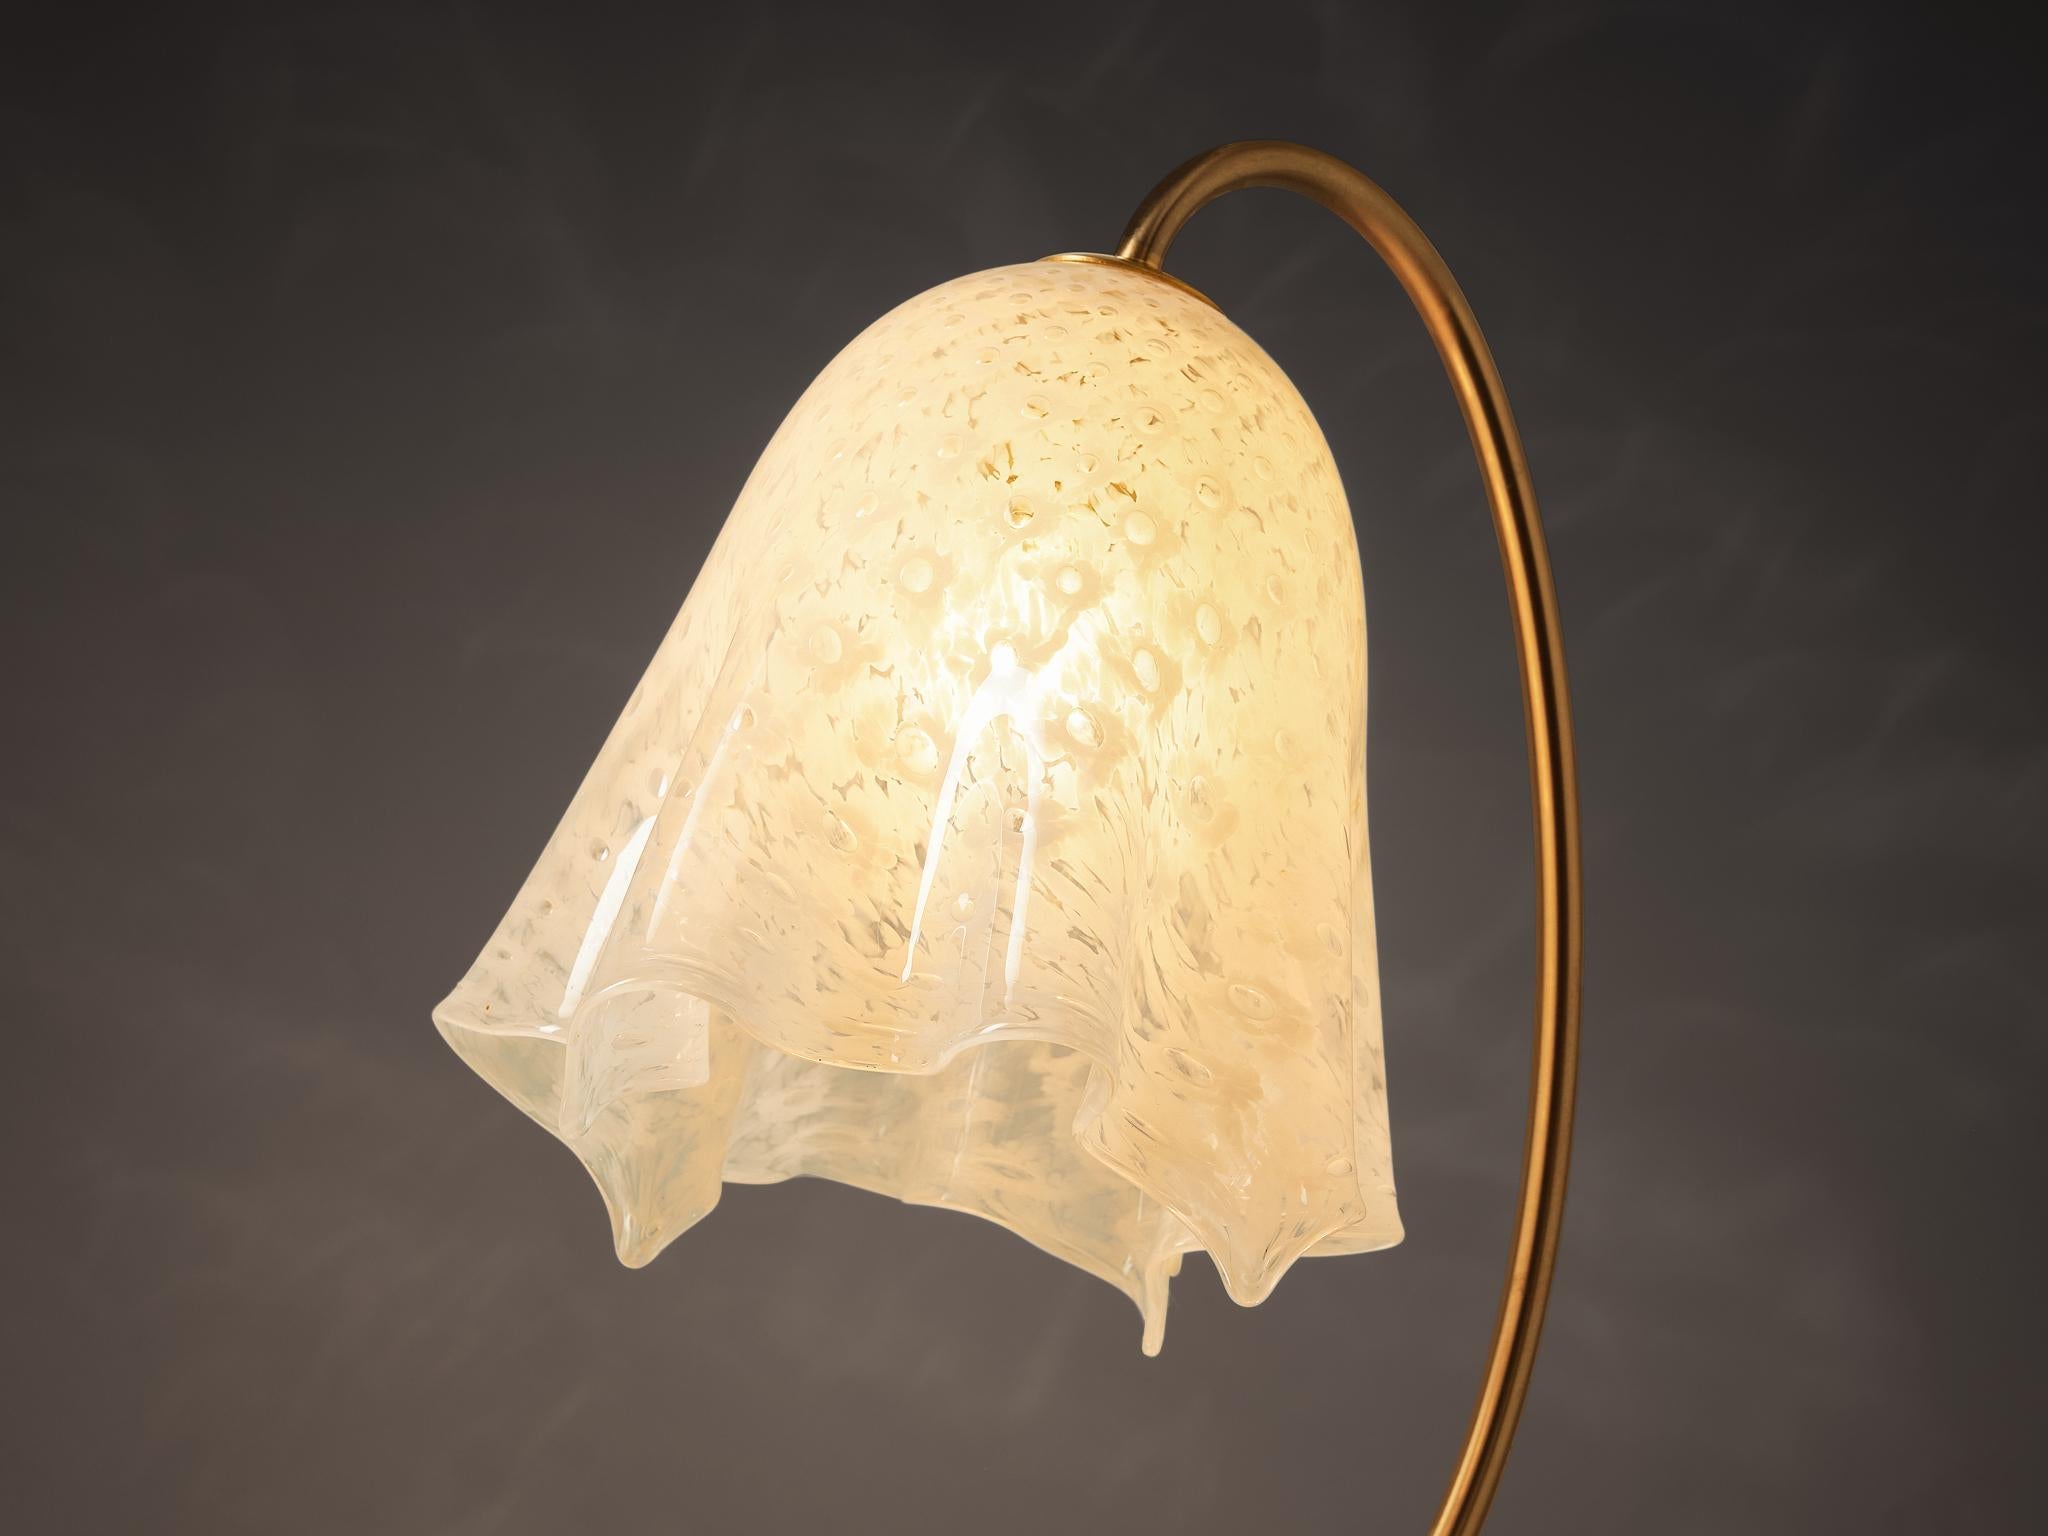 La Murrina 'Fazzoletto' Table Lamp in Murano Glass and Brass